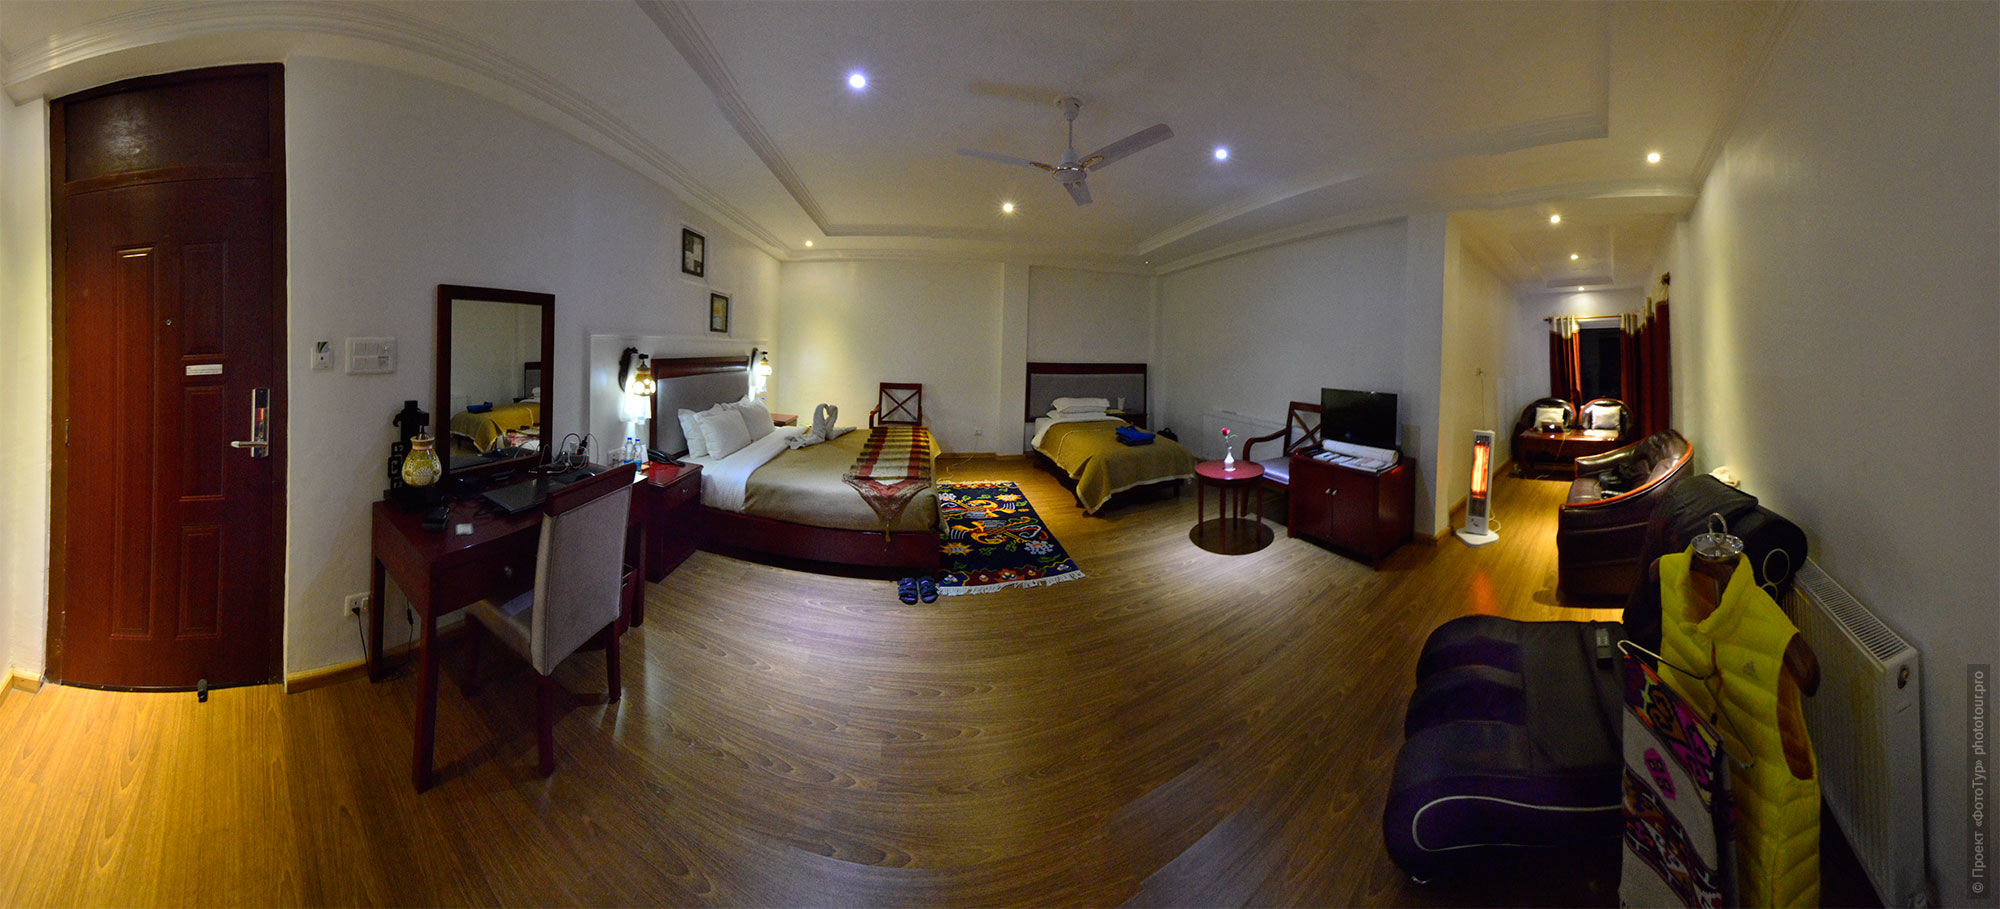 Комната в отеле Зен, Лех, Ладакх, Малый Тибет, Индия.